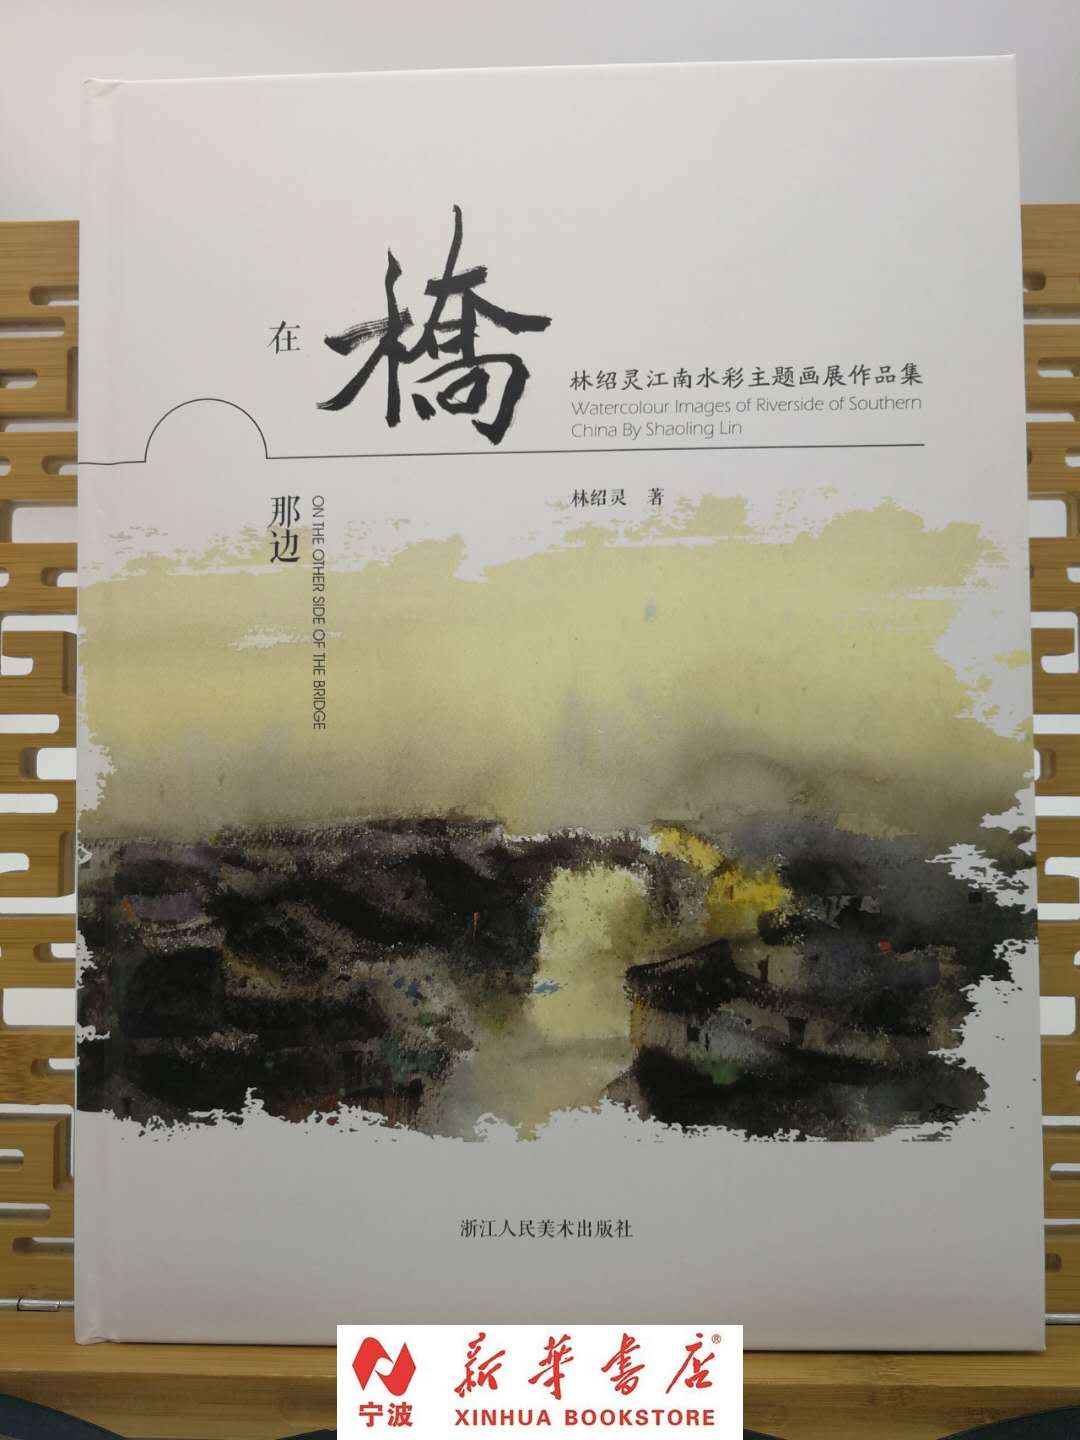 现货 在桥的那边-林绍灵江南水彩主题画展作品集 水彩绘画画展作品 新华书店品质保障